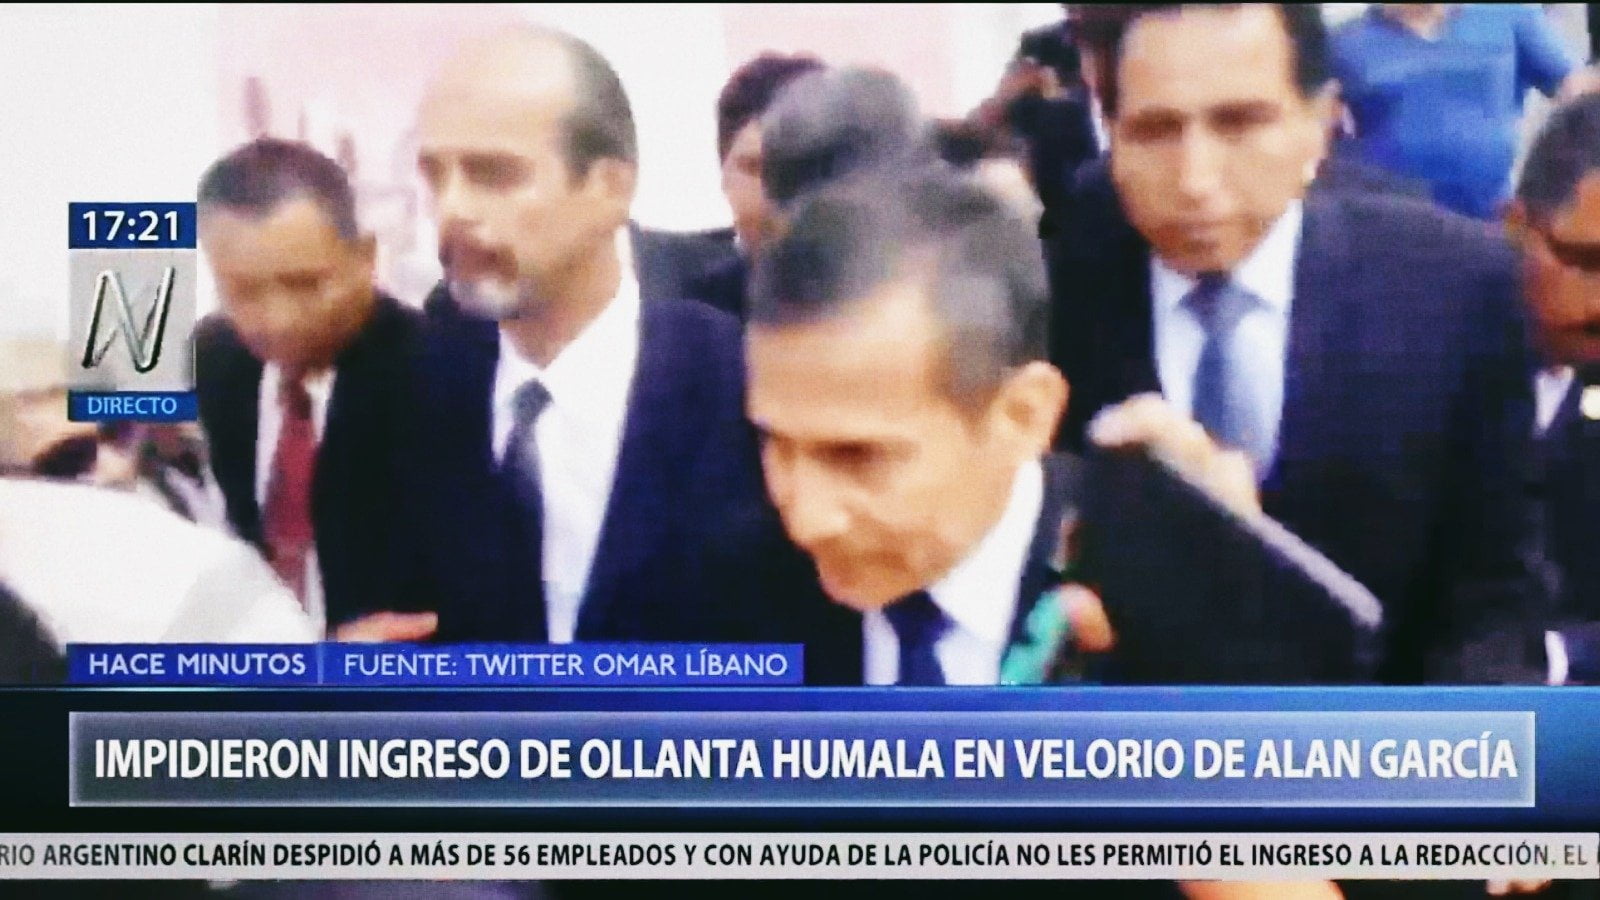 Ollanta Humala llegó al velorio de Alan García pero apristas lo expulsan